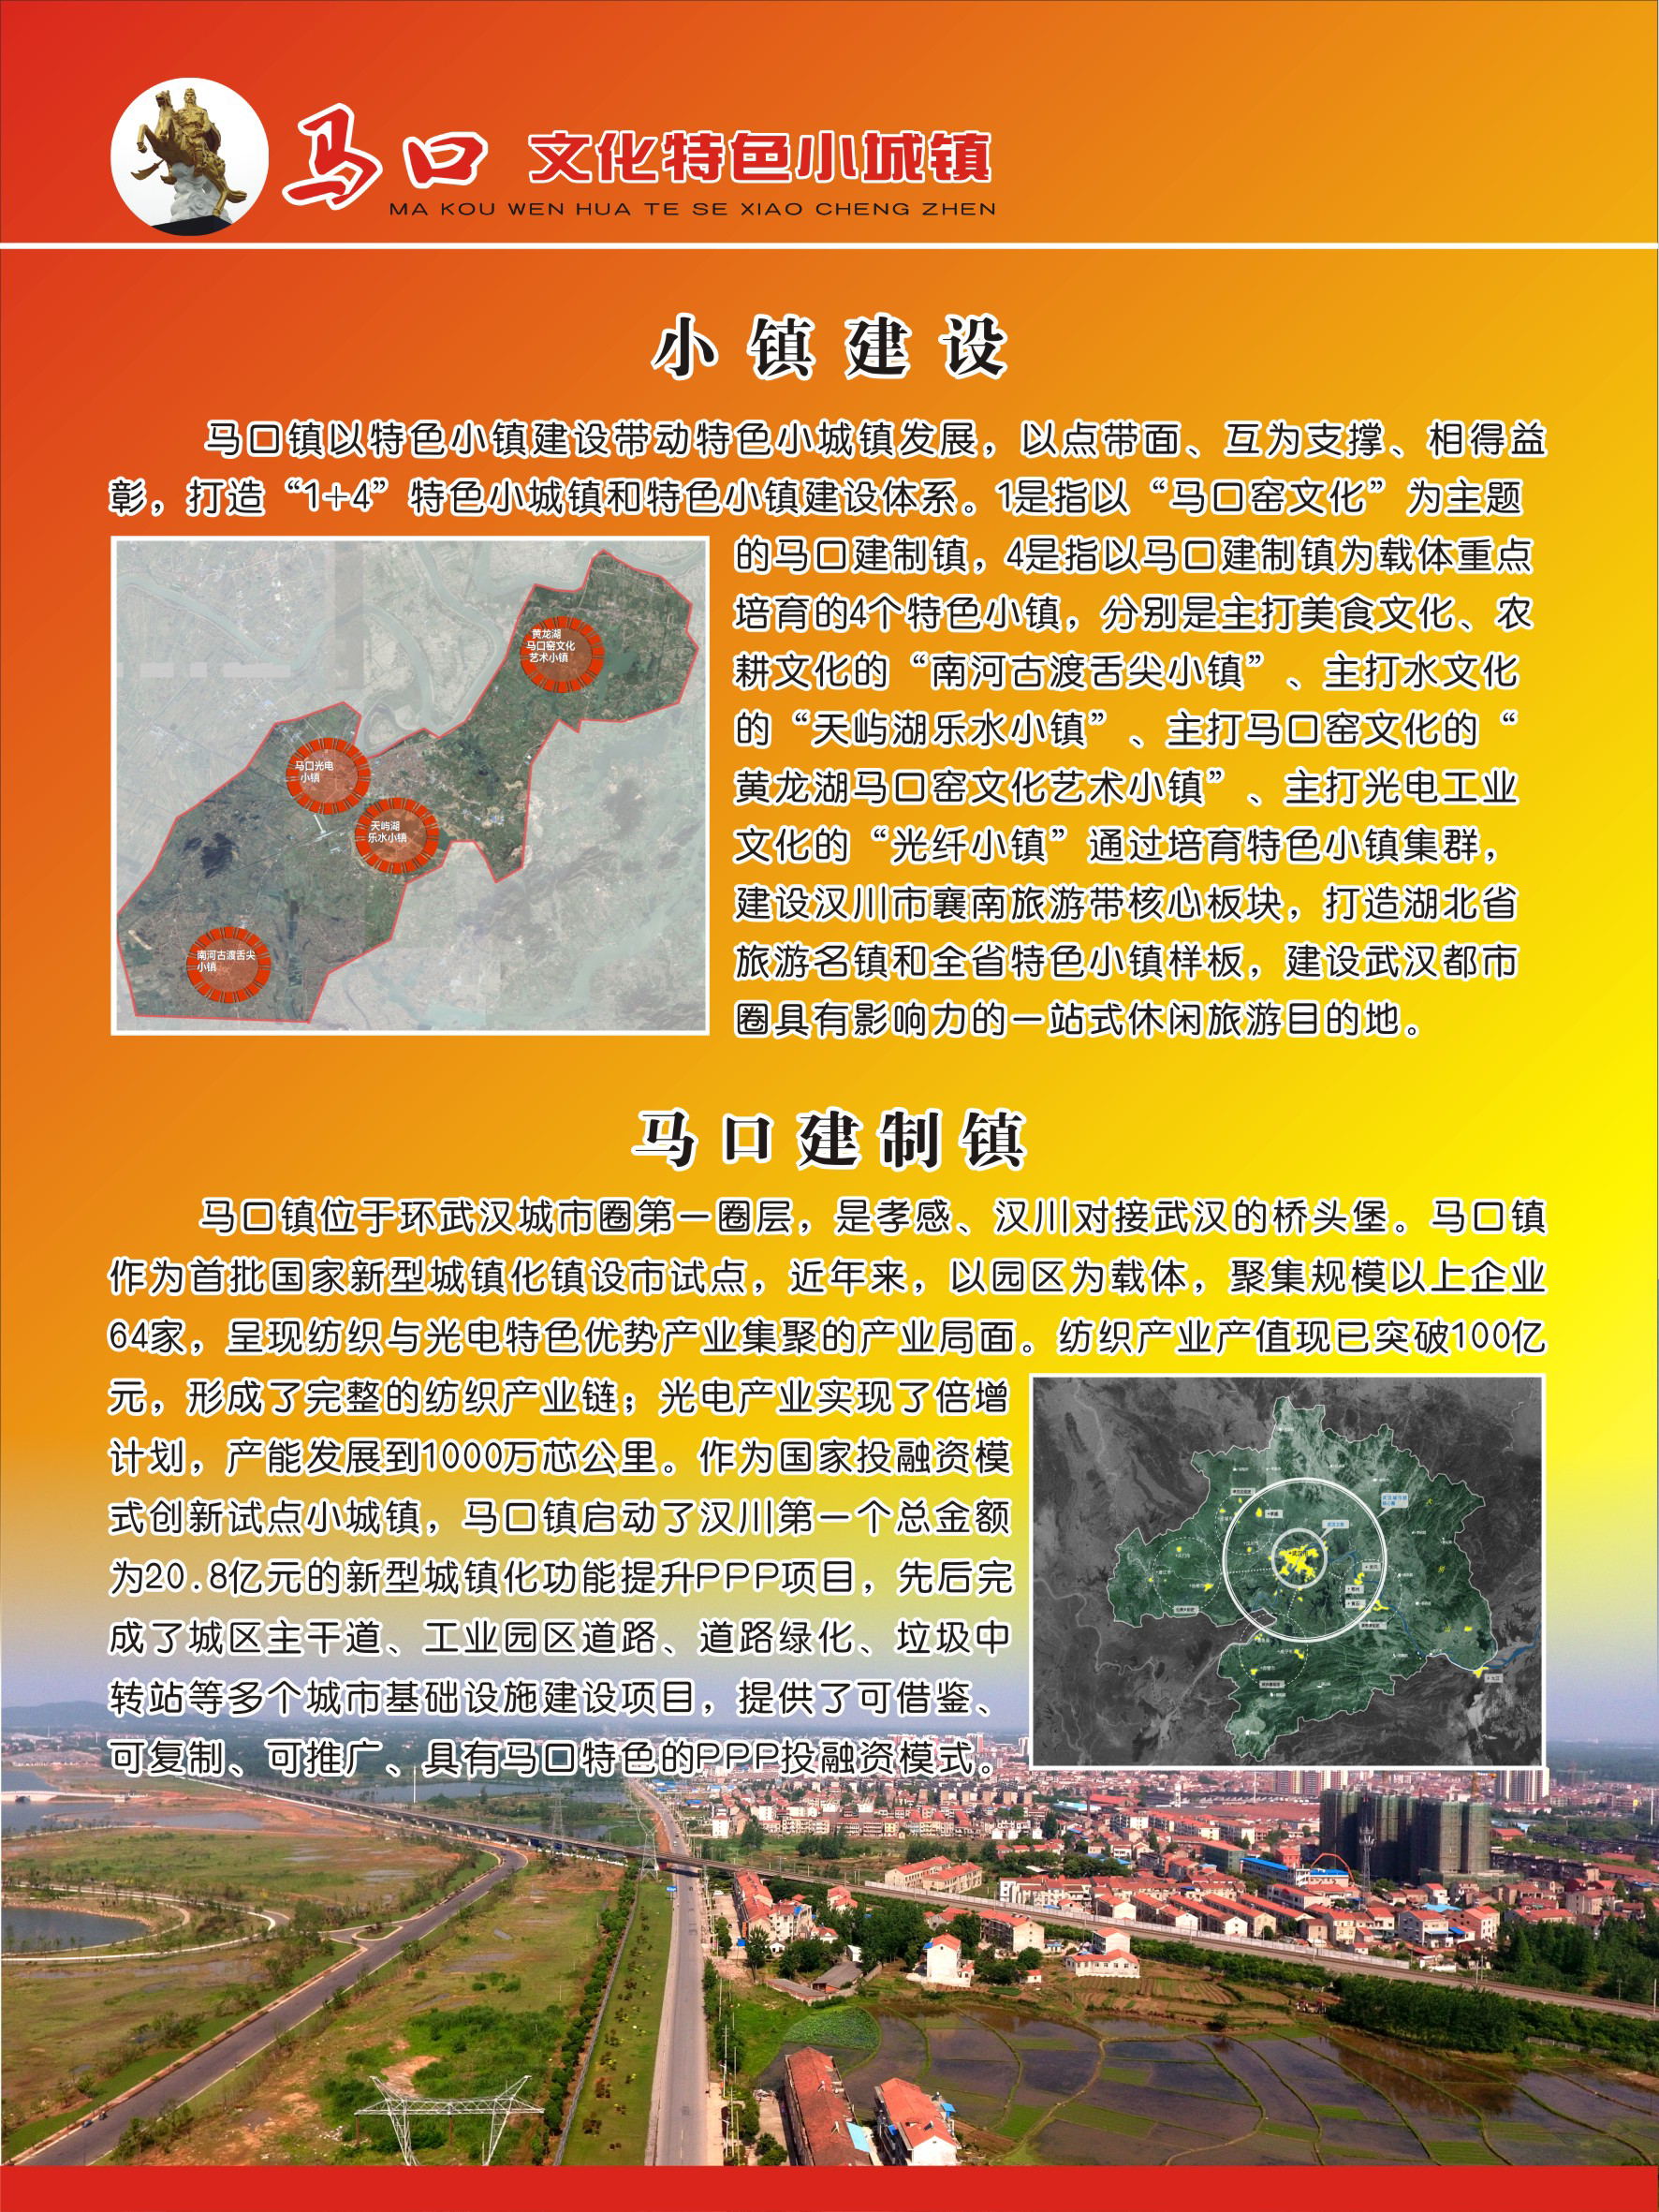 汉川市城隍转盘规划图片